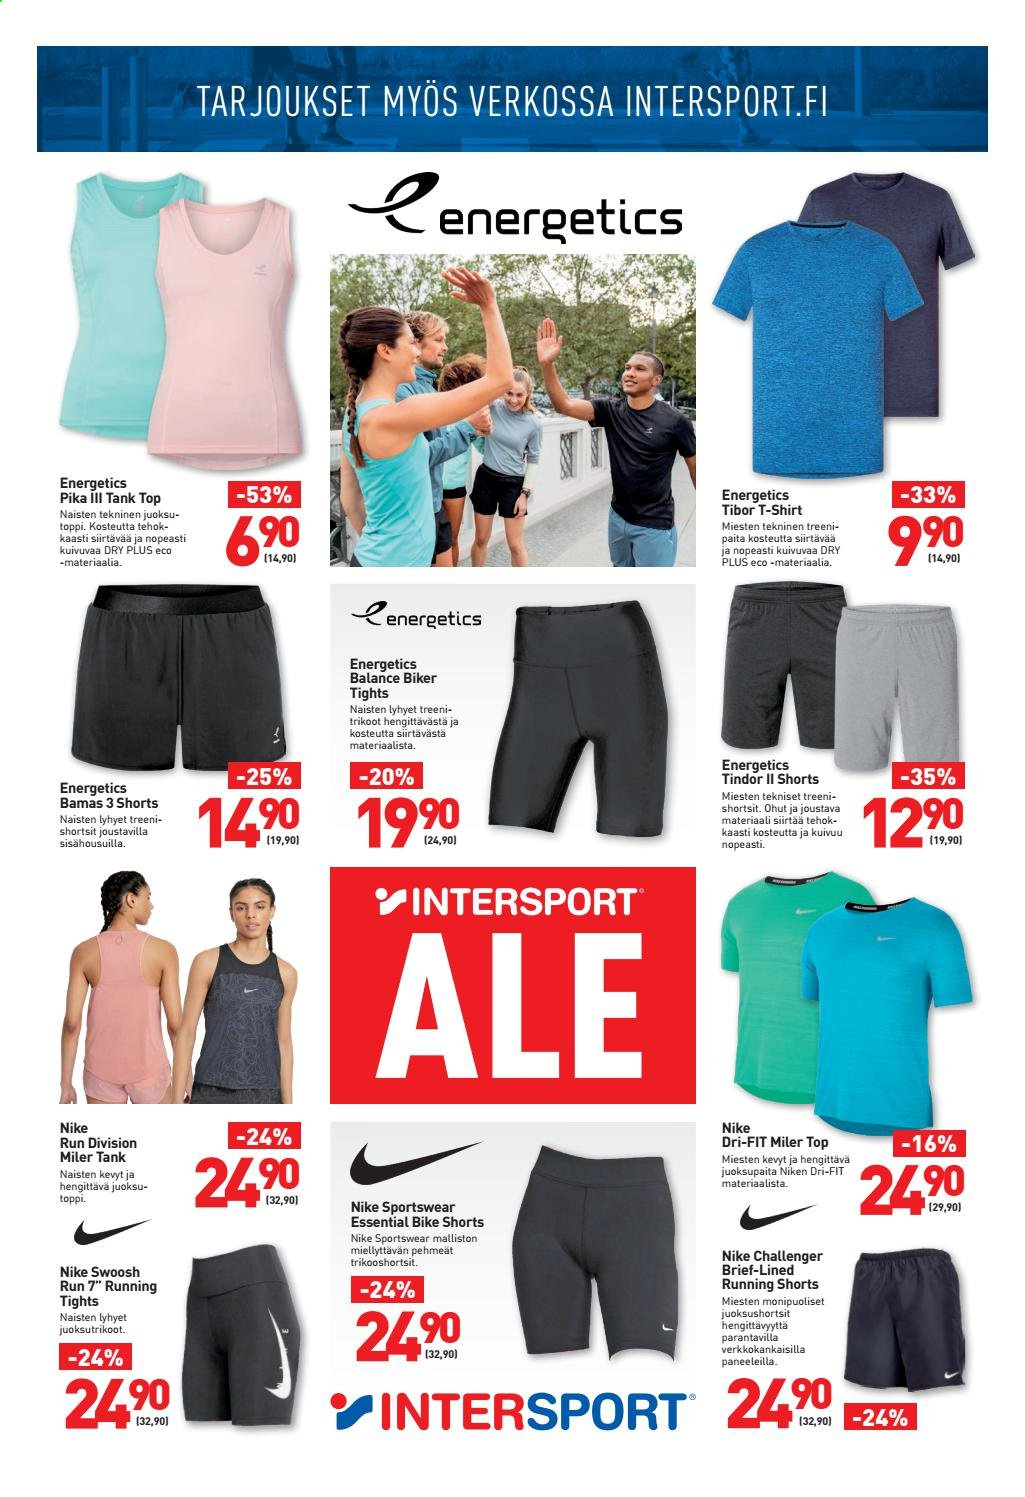 thumbnail - Intersport tarjoukset  - 12.07.2021 - 18.07.2021 - Tarjoustuotteet - Nike, shortsit, juoksupaita, paita, toppi, t-paita, trikoot, trikoopaidat, Energetics. Sivu 3.